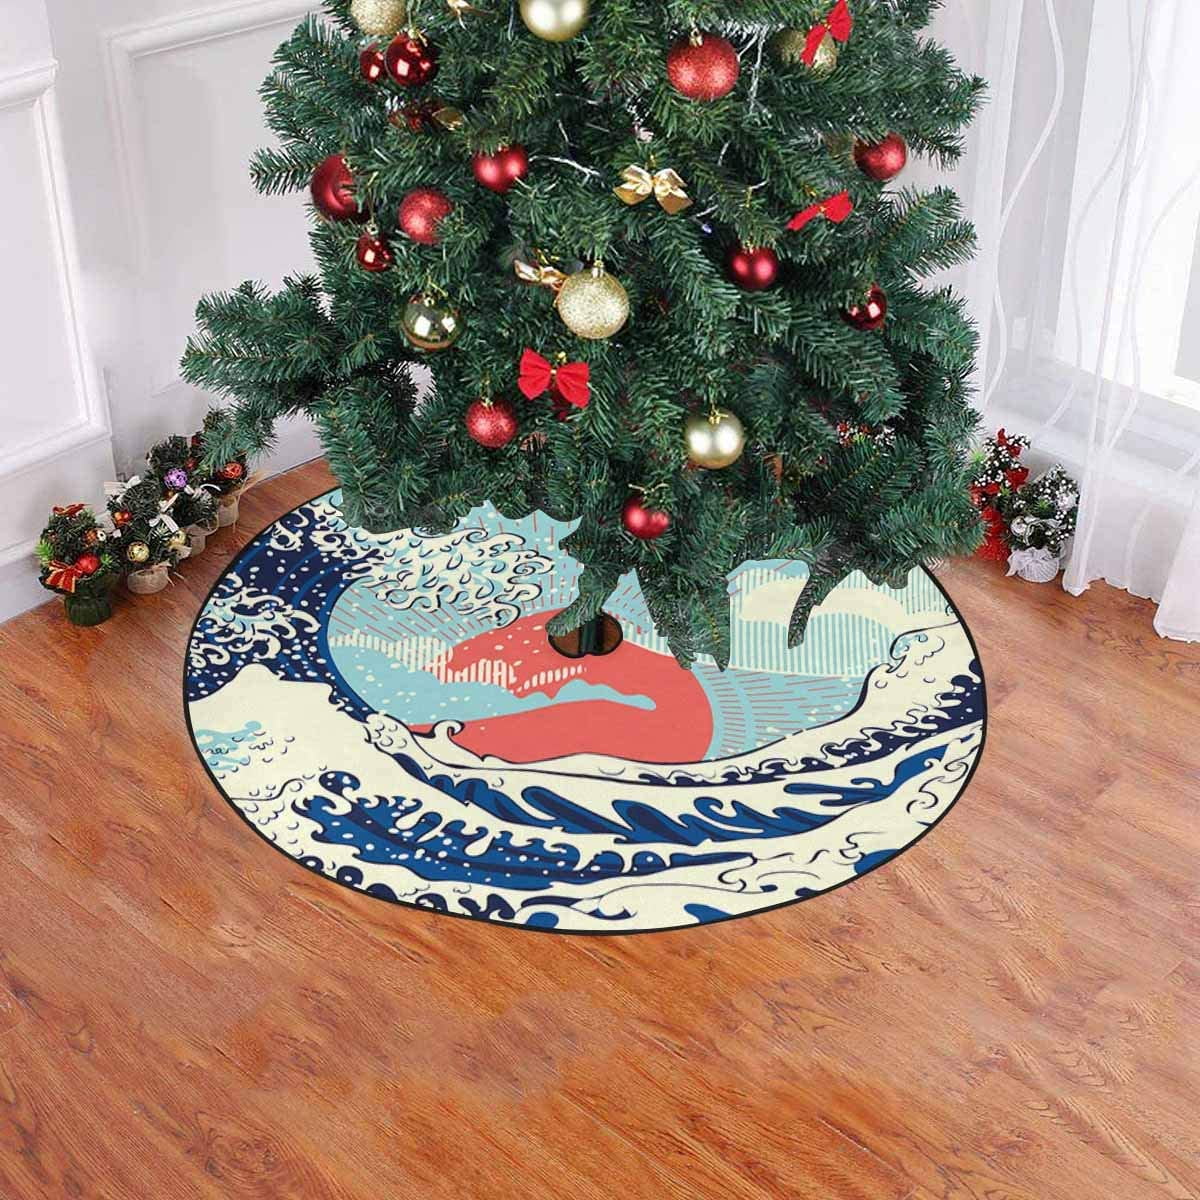 Save on Christmas Tree Skirts  Yahoo Shopping